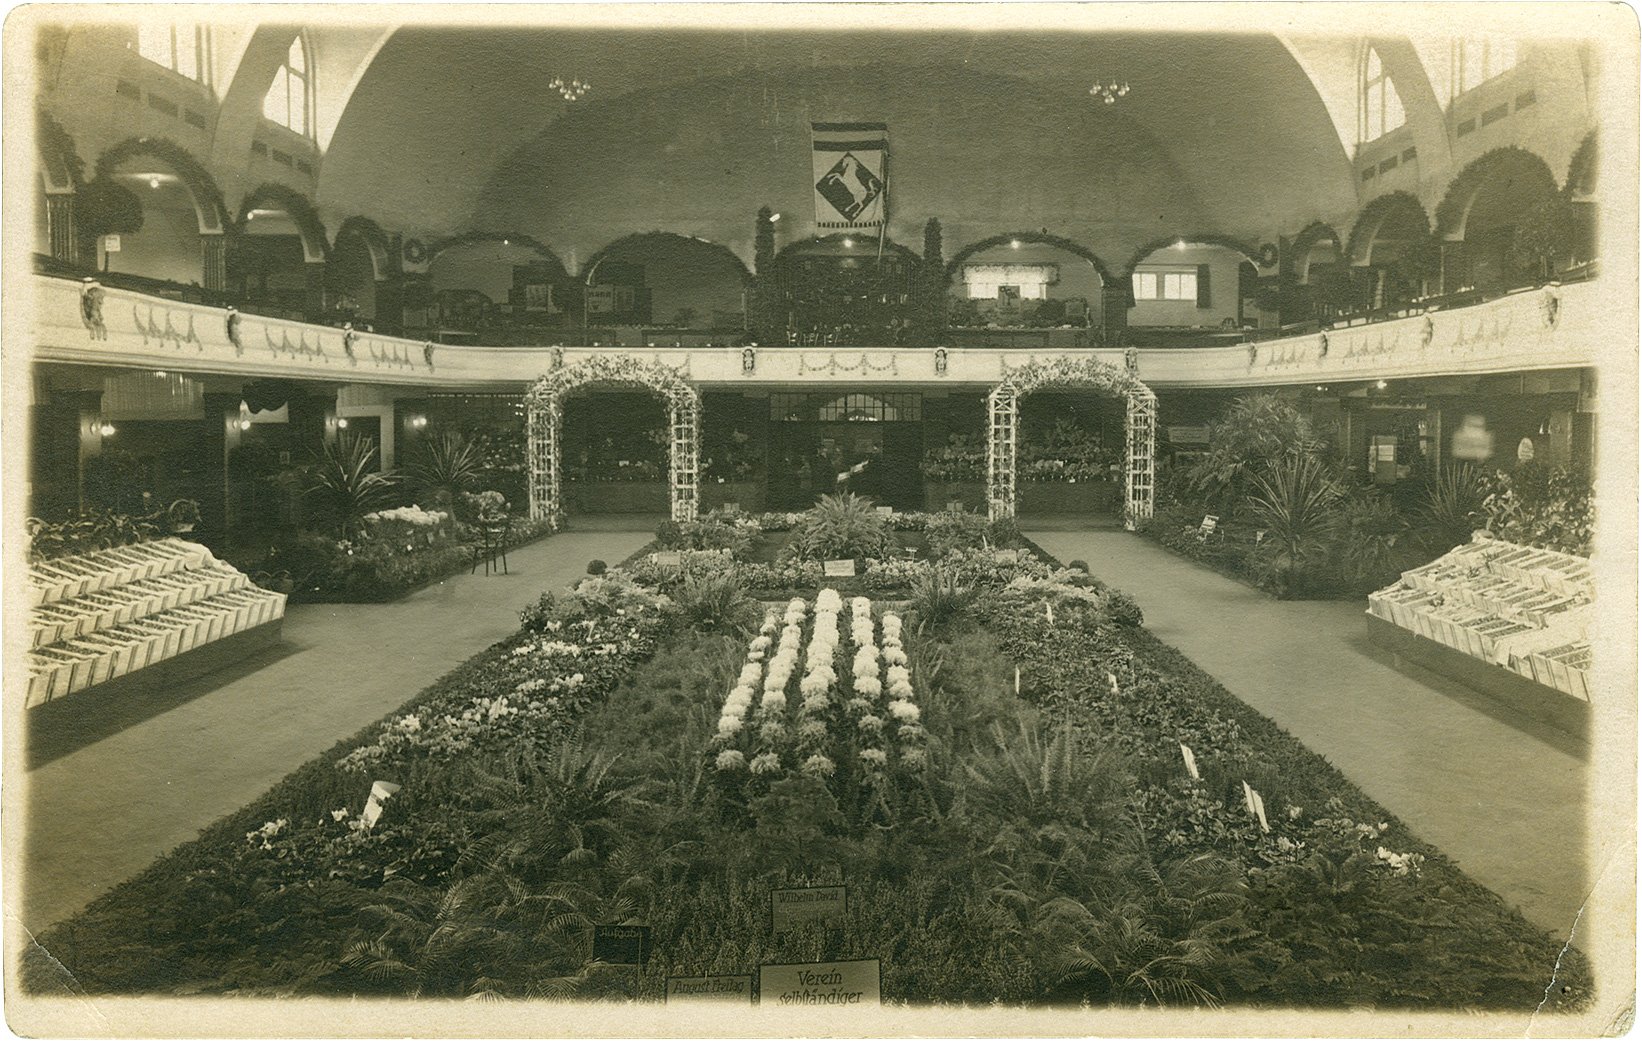 Postkarte: Der Festsaal des Schützenhofes anlässlich der 3. Provinzial-Obst-, Gemüse-, Gartenbau- und Bindekunstausstellung 1925. (Stadtmuseum Münster CC BY-NC-SA)